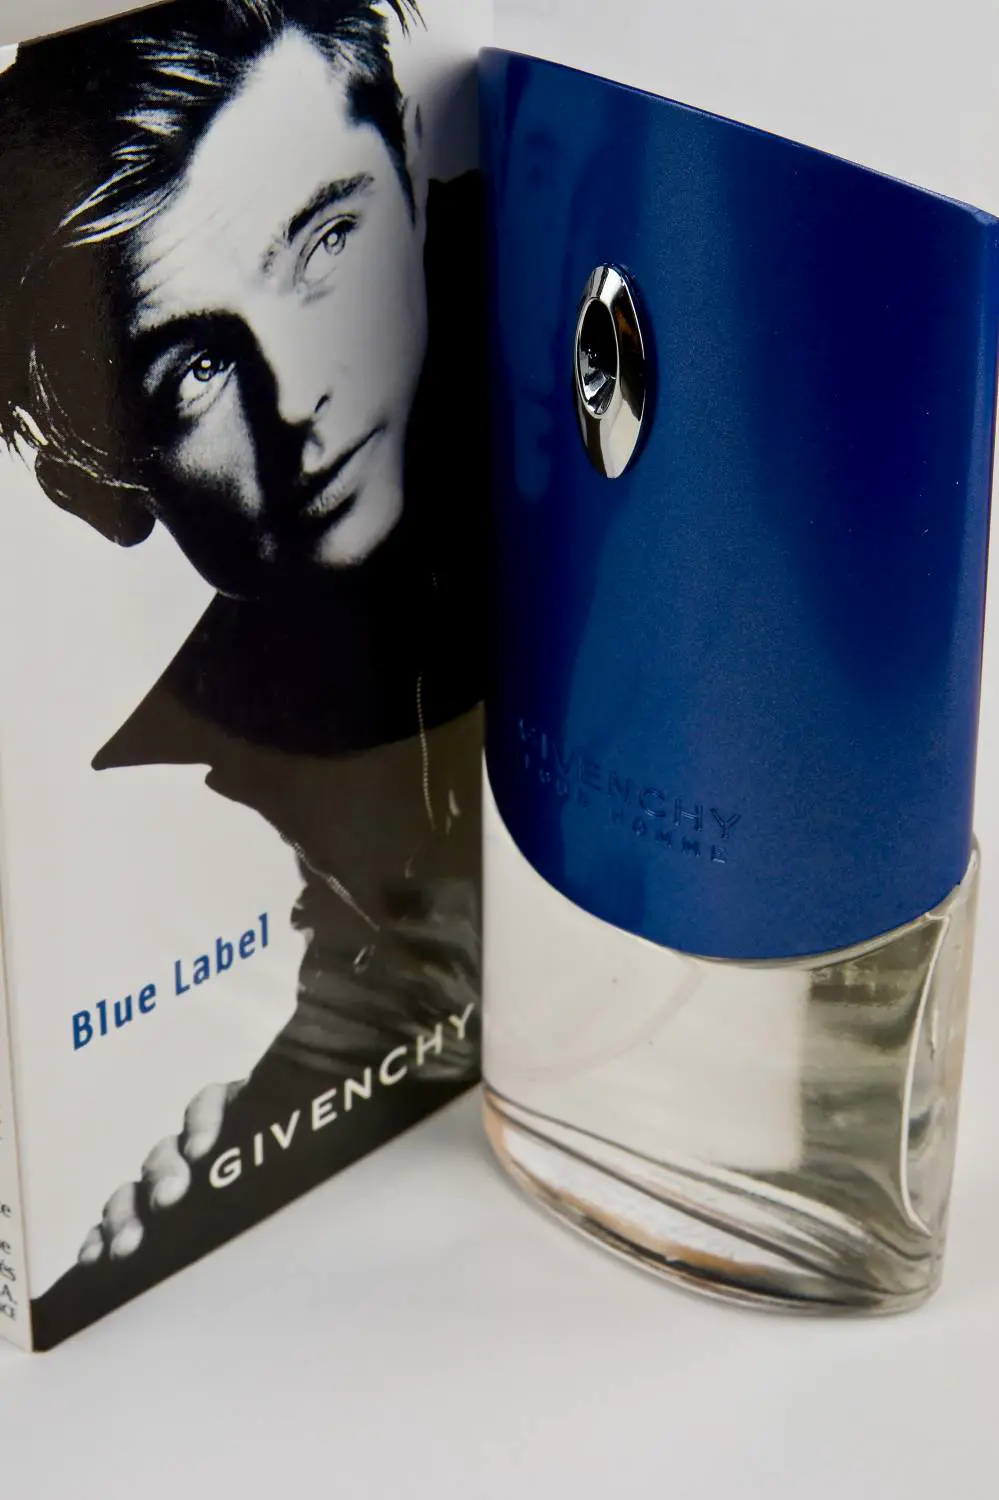 Homme blue туалетная вода. Givenchy pour homme Blue Label. Дживанши туалетная Блу лейбл вода. Живанши духи мужские голубые. Туалетная вода Givenchy Givenchy pour homme.